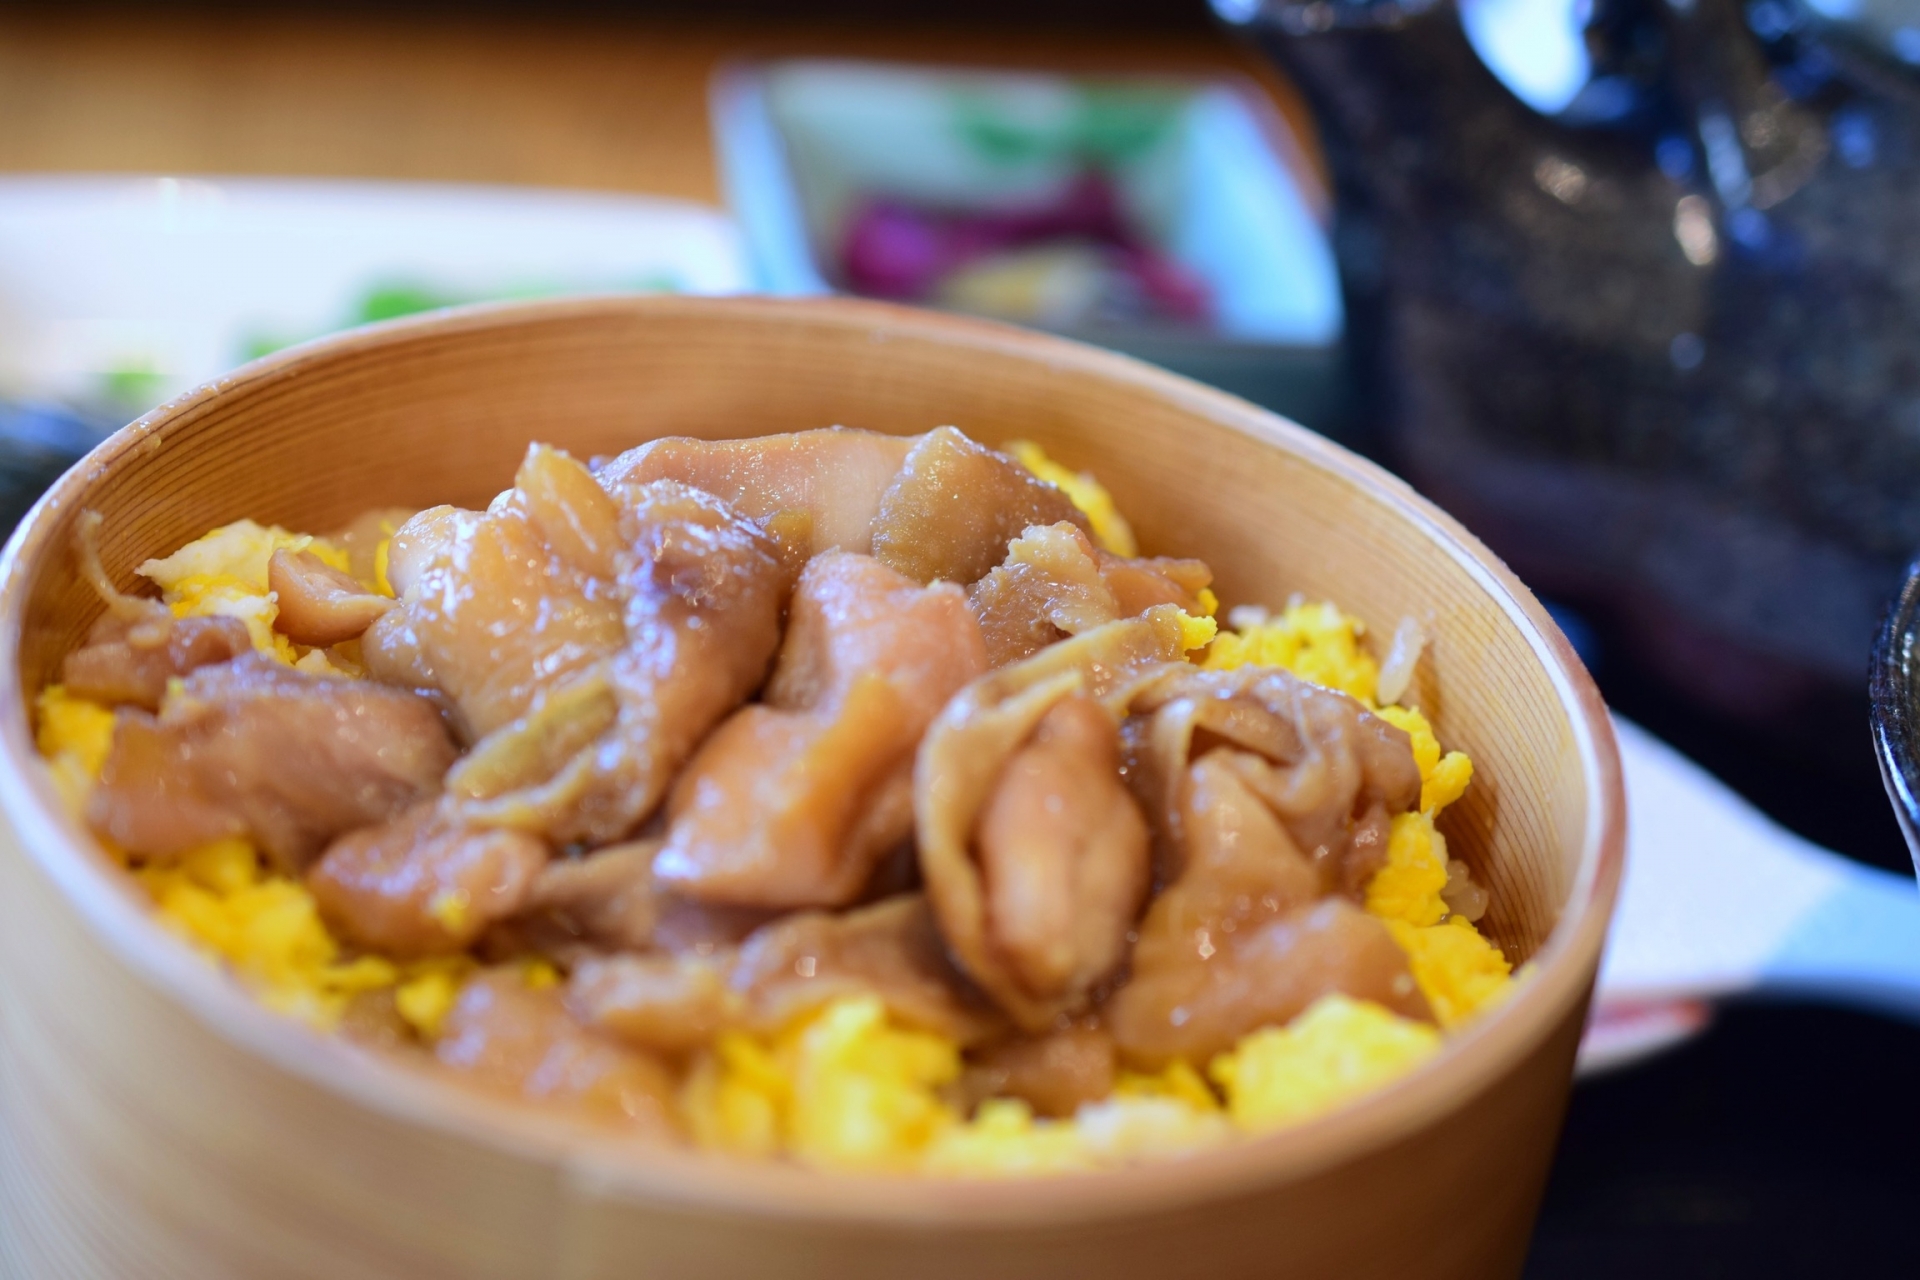 秋田で食べるべき名物はコレ 絶対におすすめな人気のご当地グルメの名店10選 Seeingjapan